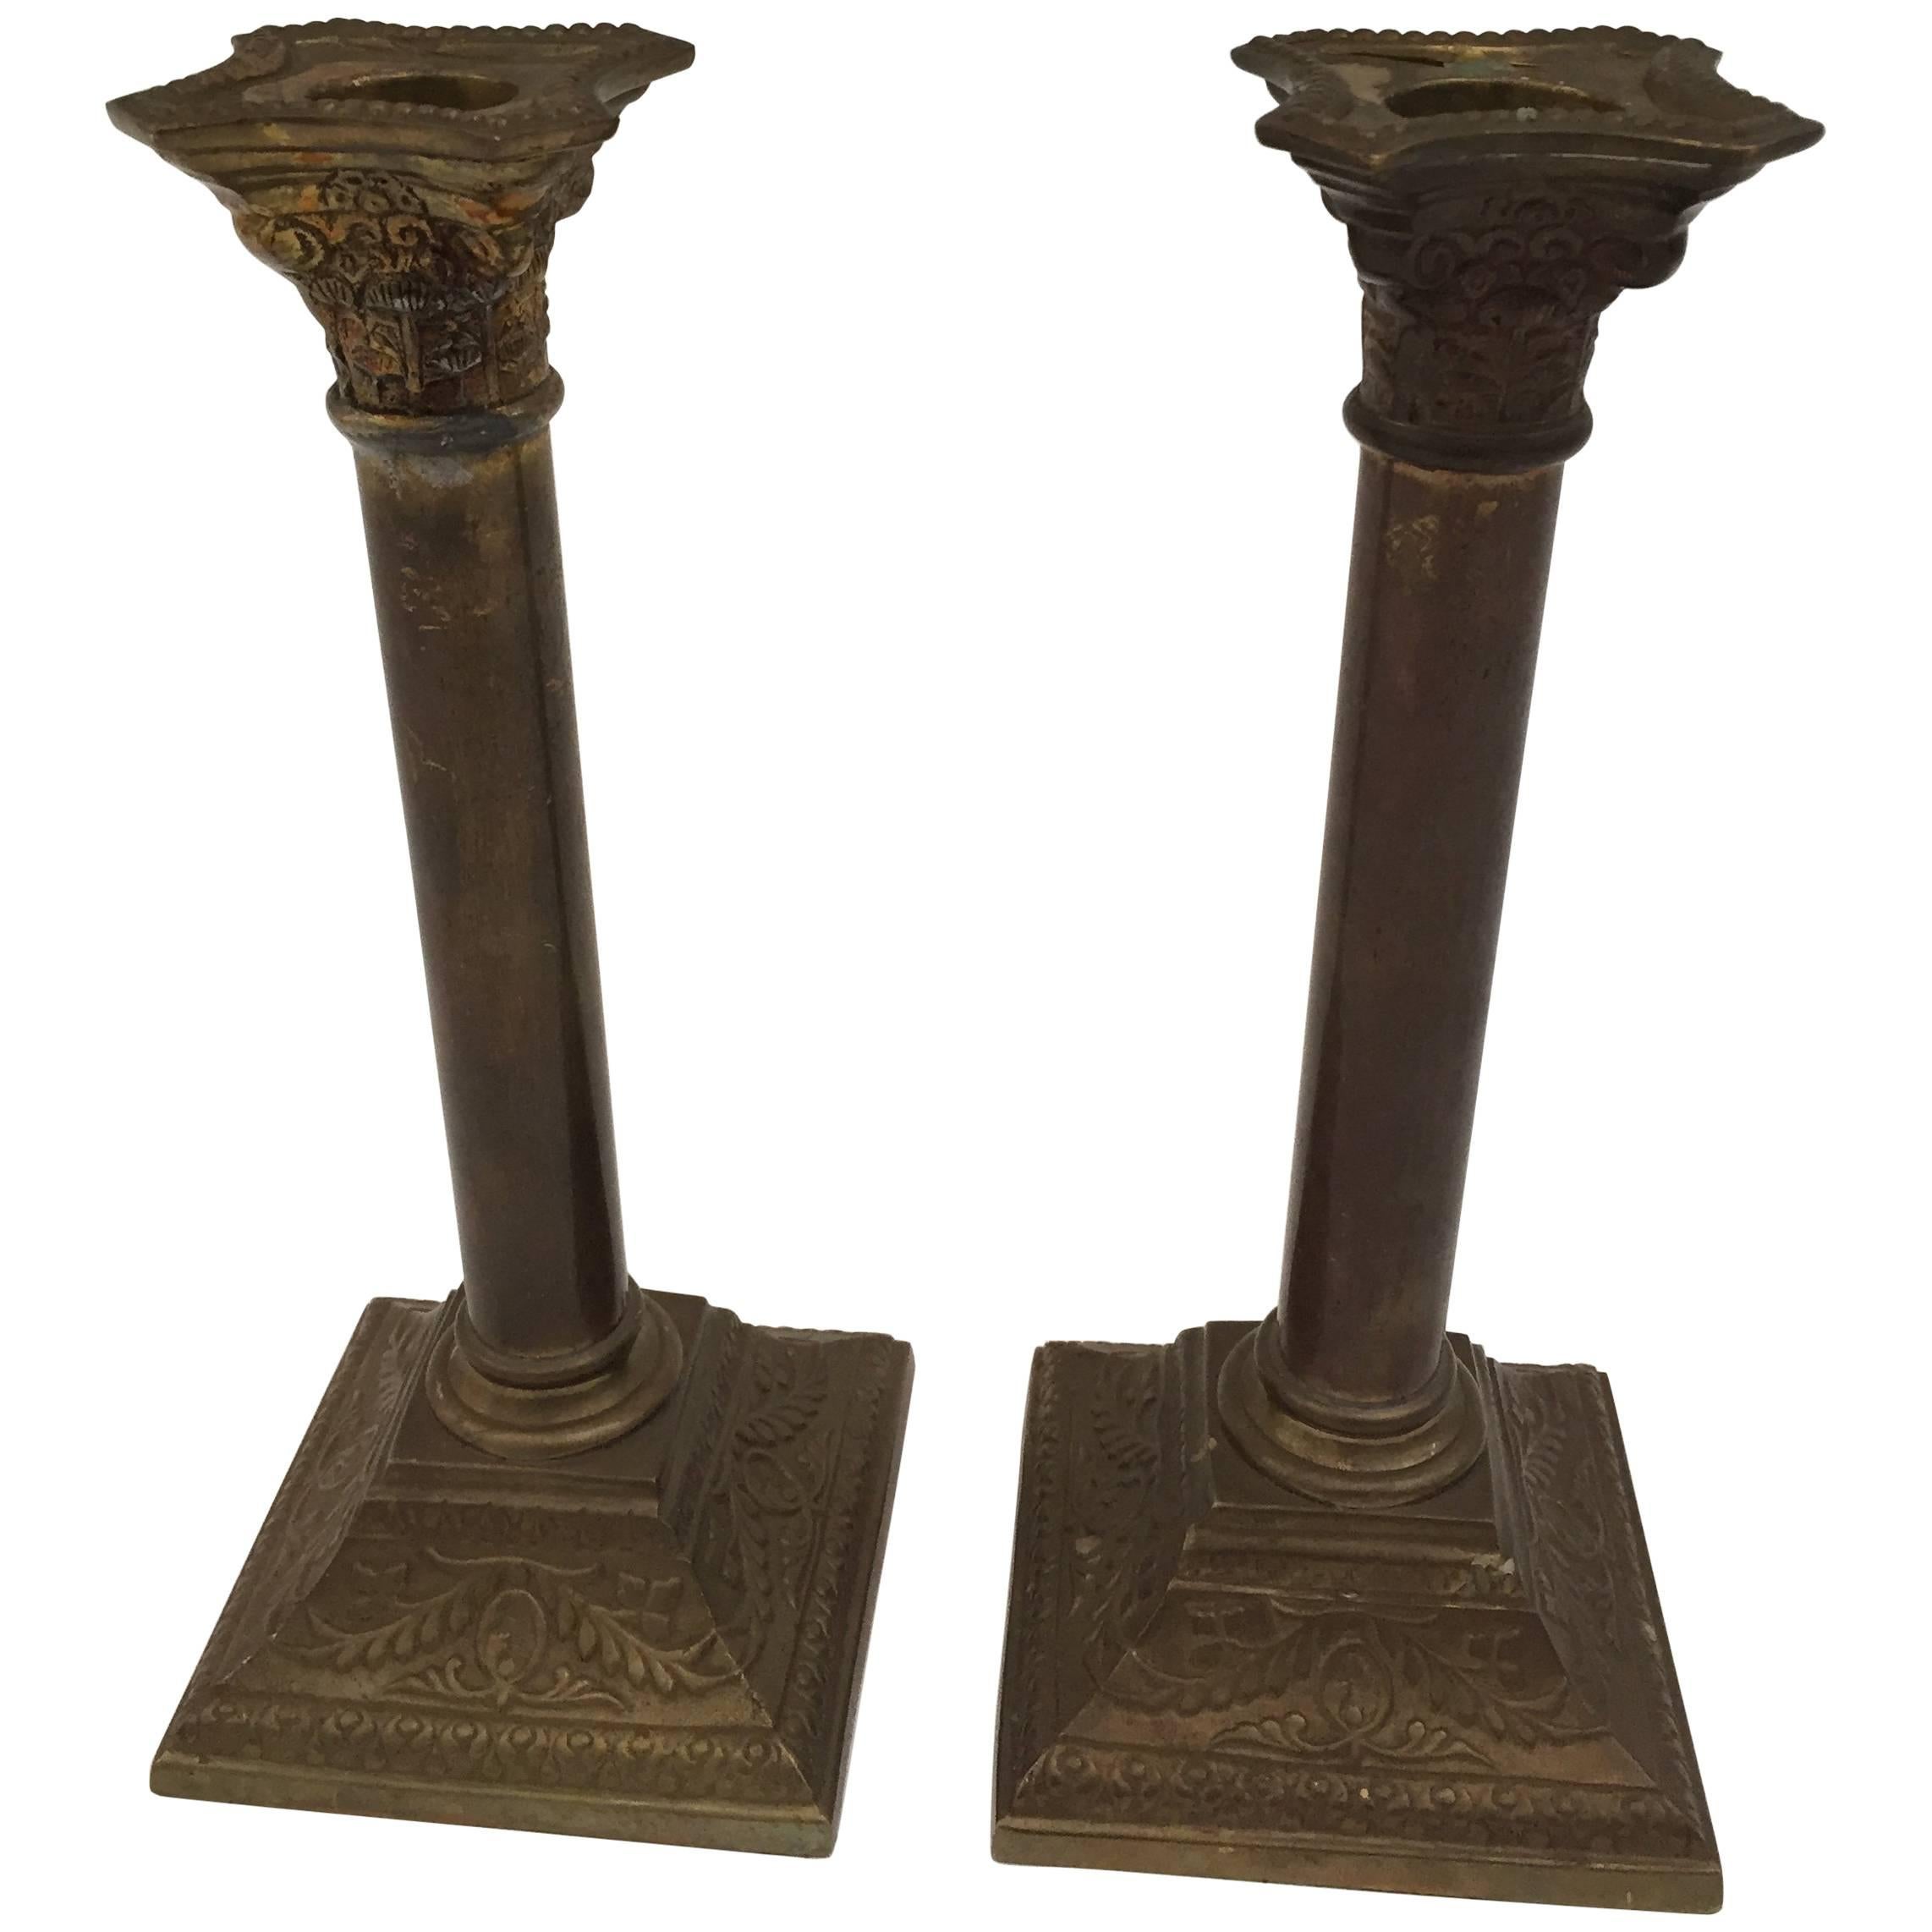 Ein sehr schönes Paar Messing-Kerzenhalter im neoklassischen Stil von George III. mit quadratischen Basen und säulenförmigen Schäften, die urnenförmige Kerzenbecher tragen.
Die Kerzenständer haben die Form von Säulen, die Basen und die Oberseite